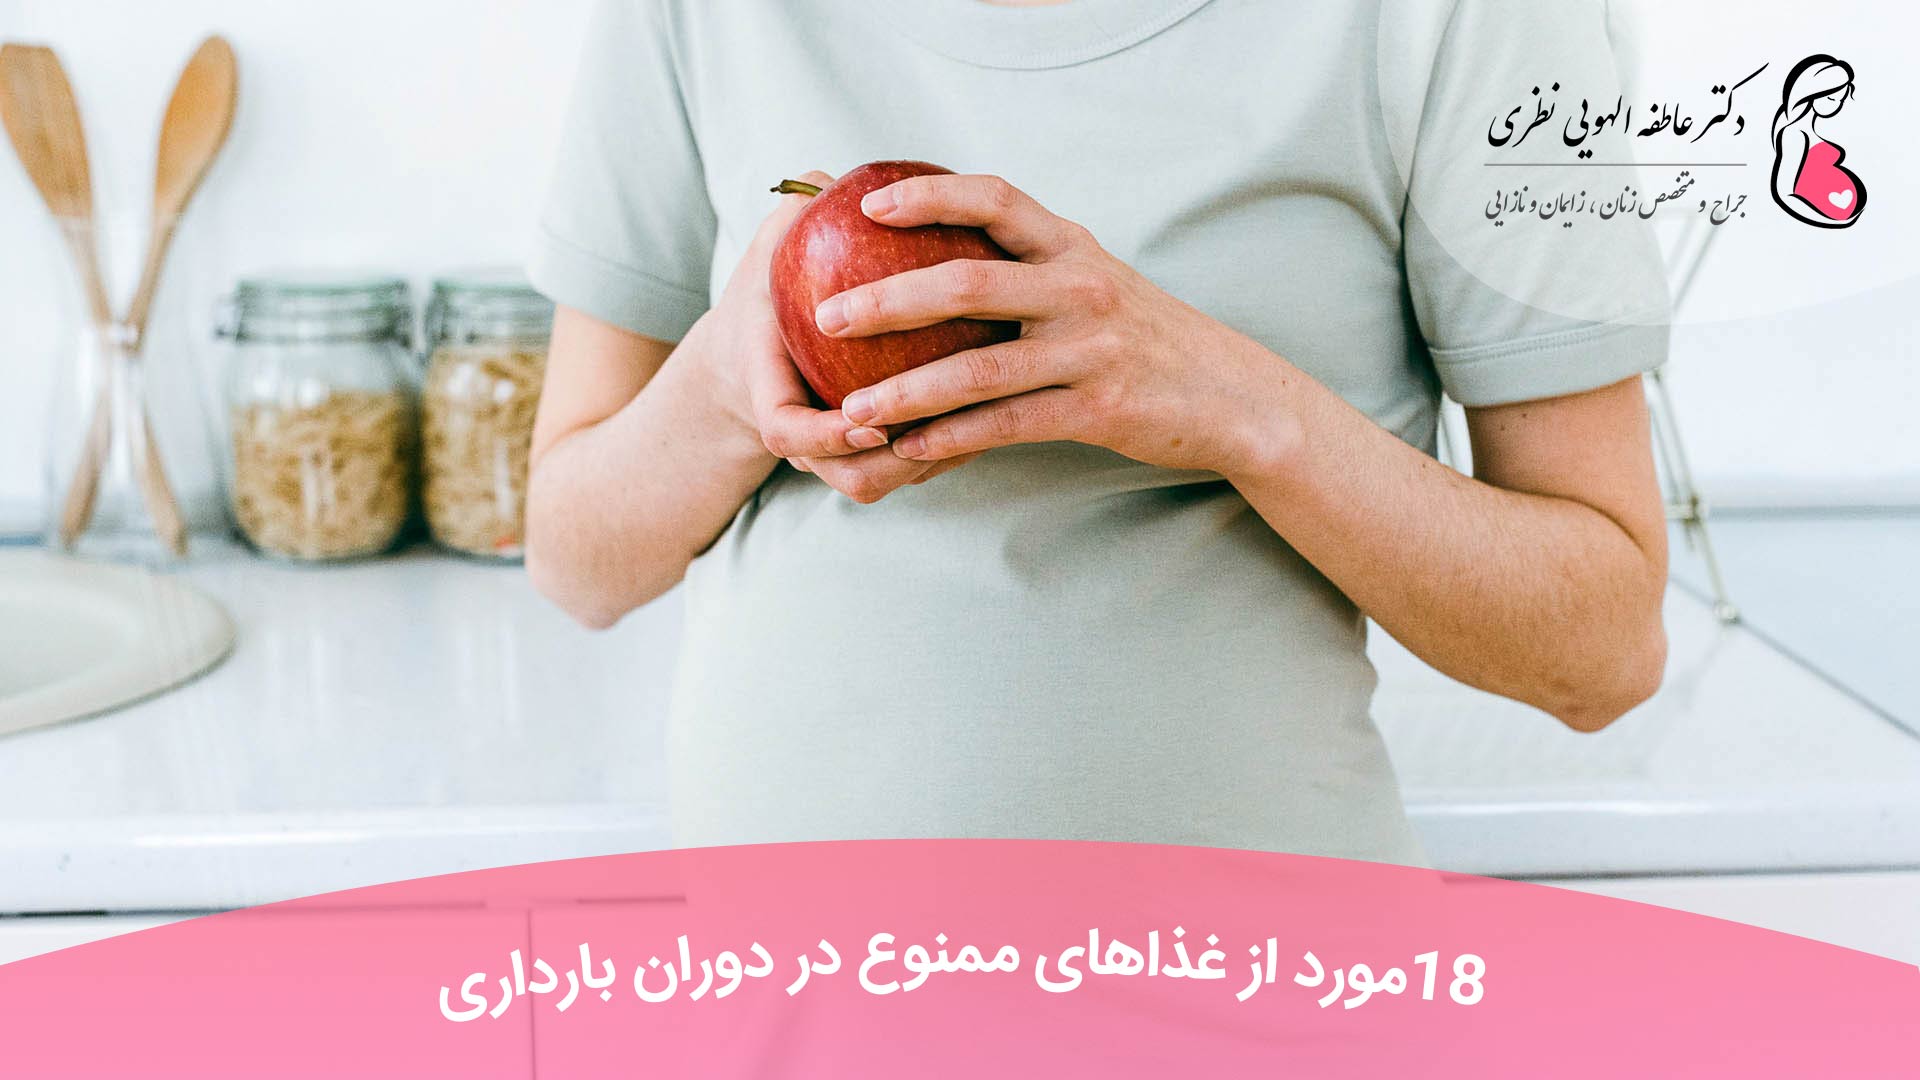 18 مورد از غذاهای ممنوع در دوران بارداری